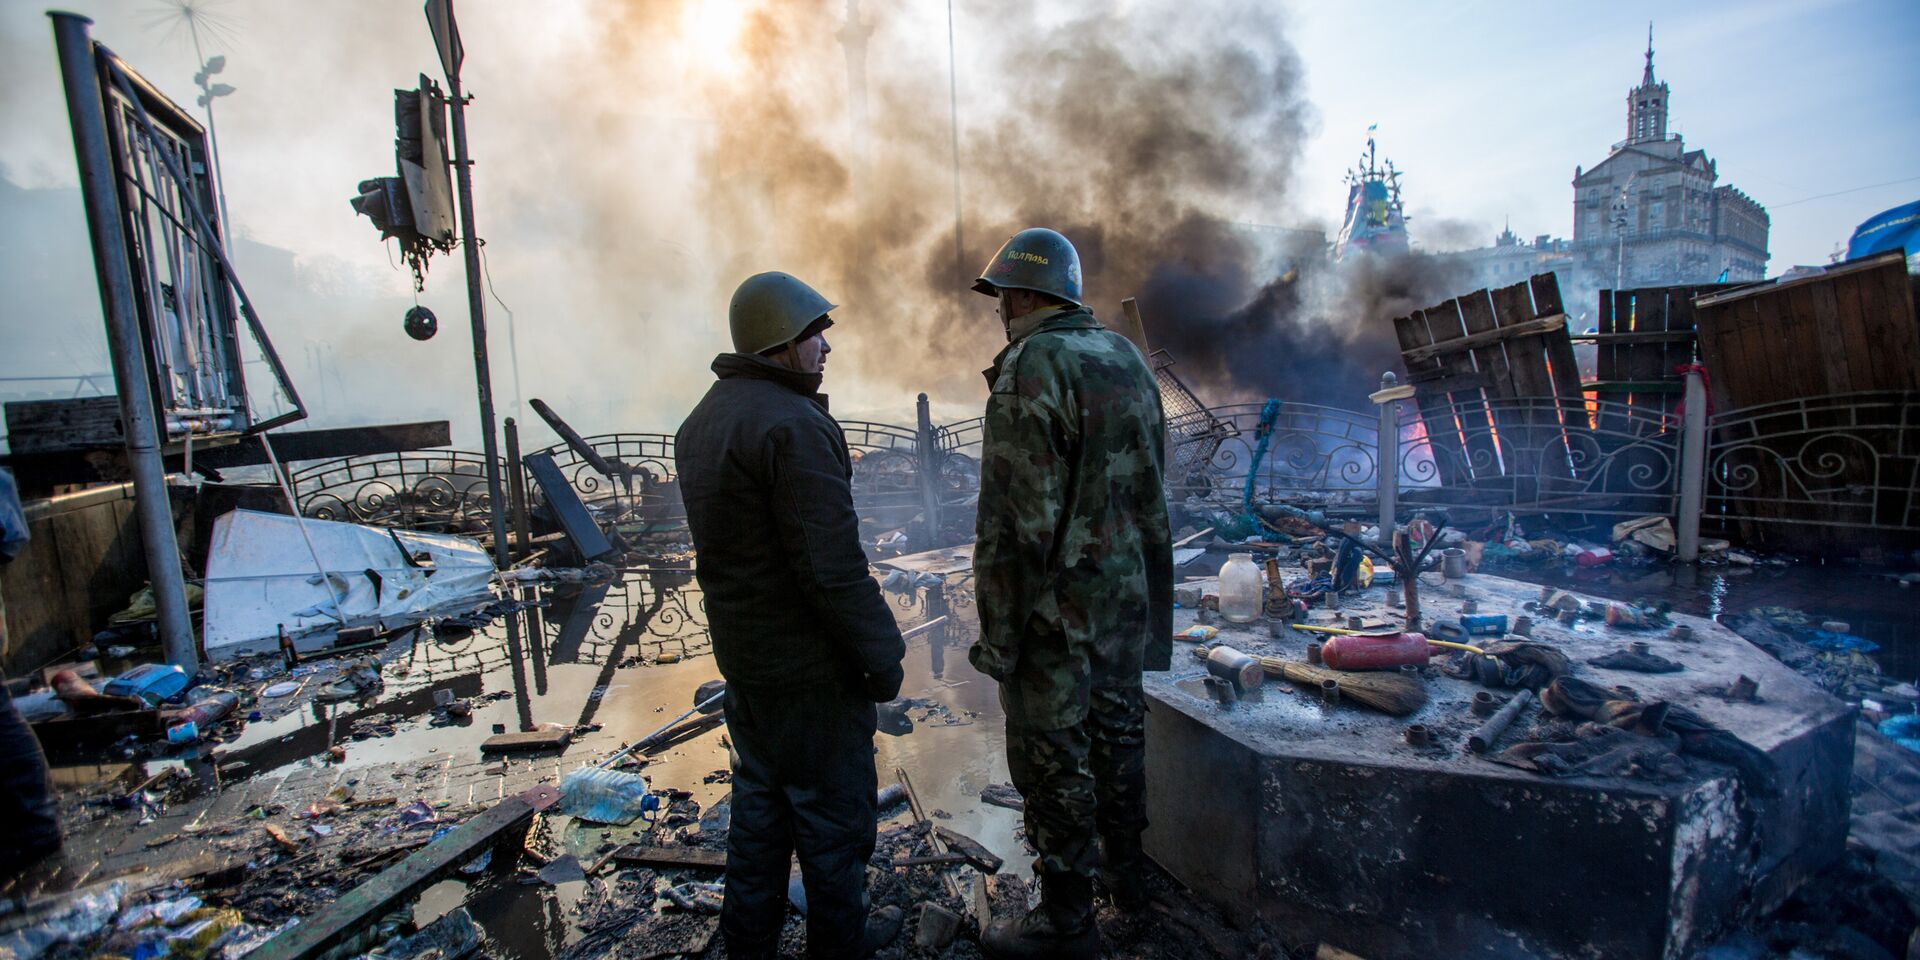 Кто начал эту грязную бойню? Почему мы не встали на сторону демократии в борьбе с киевской кликой?